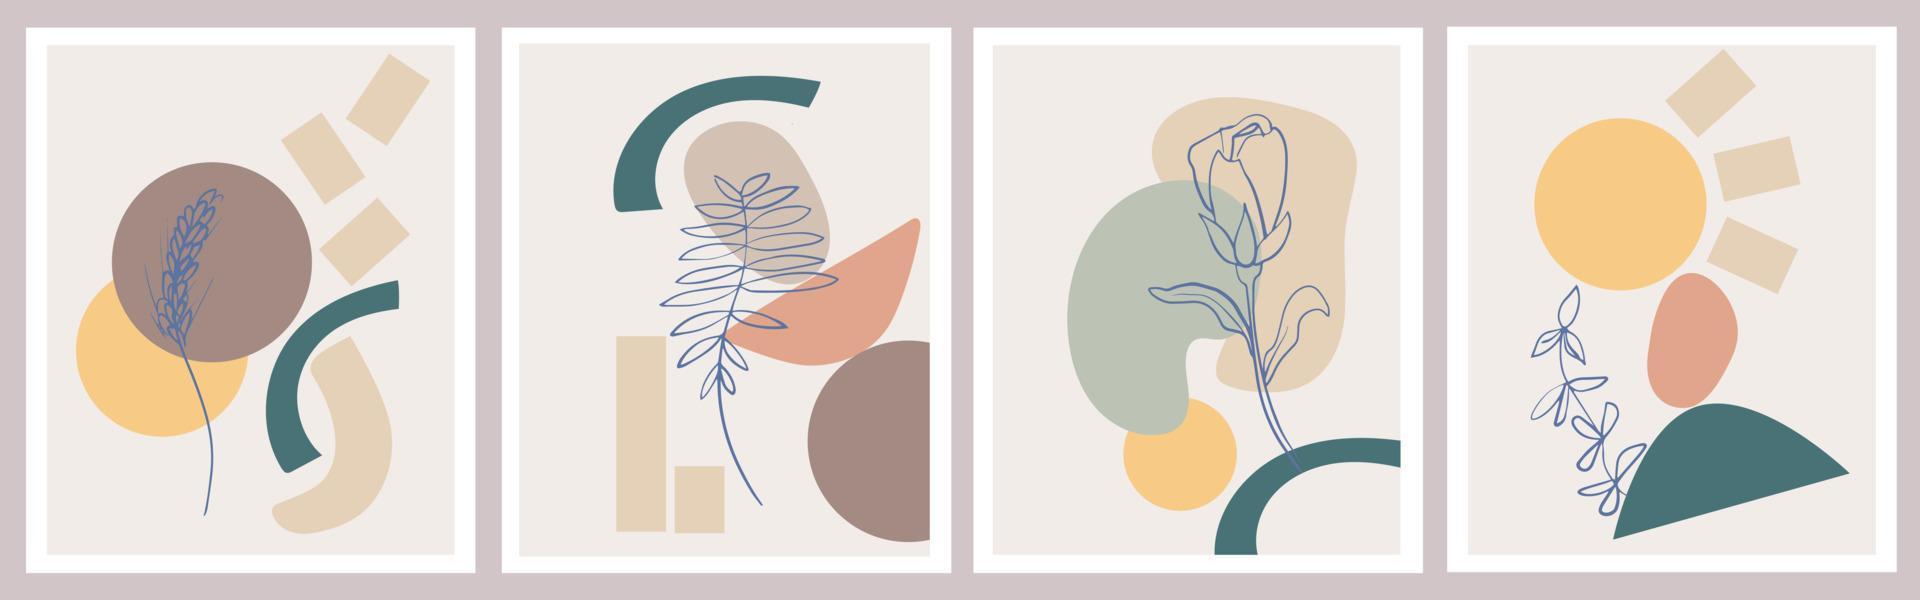 un conjunto de carteles creativos. fondo abstracto moderno en colores pastel. formas geométricas mínimas, plantas botánicas y elementos florales, arte lineal vector